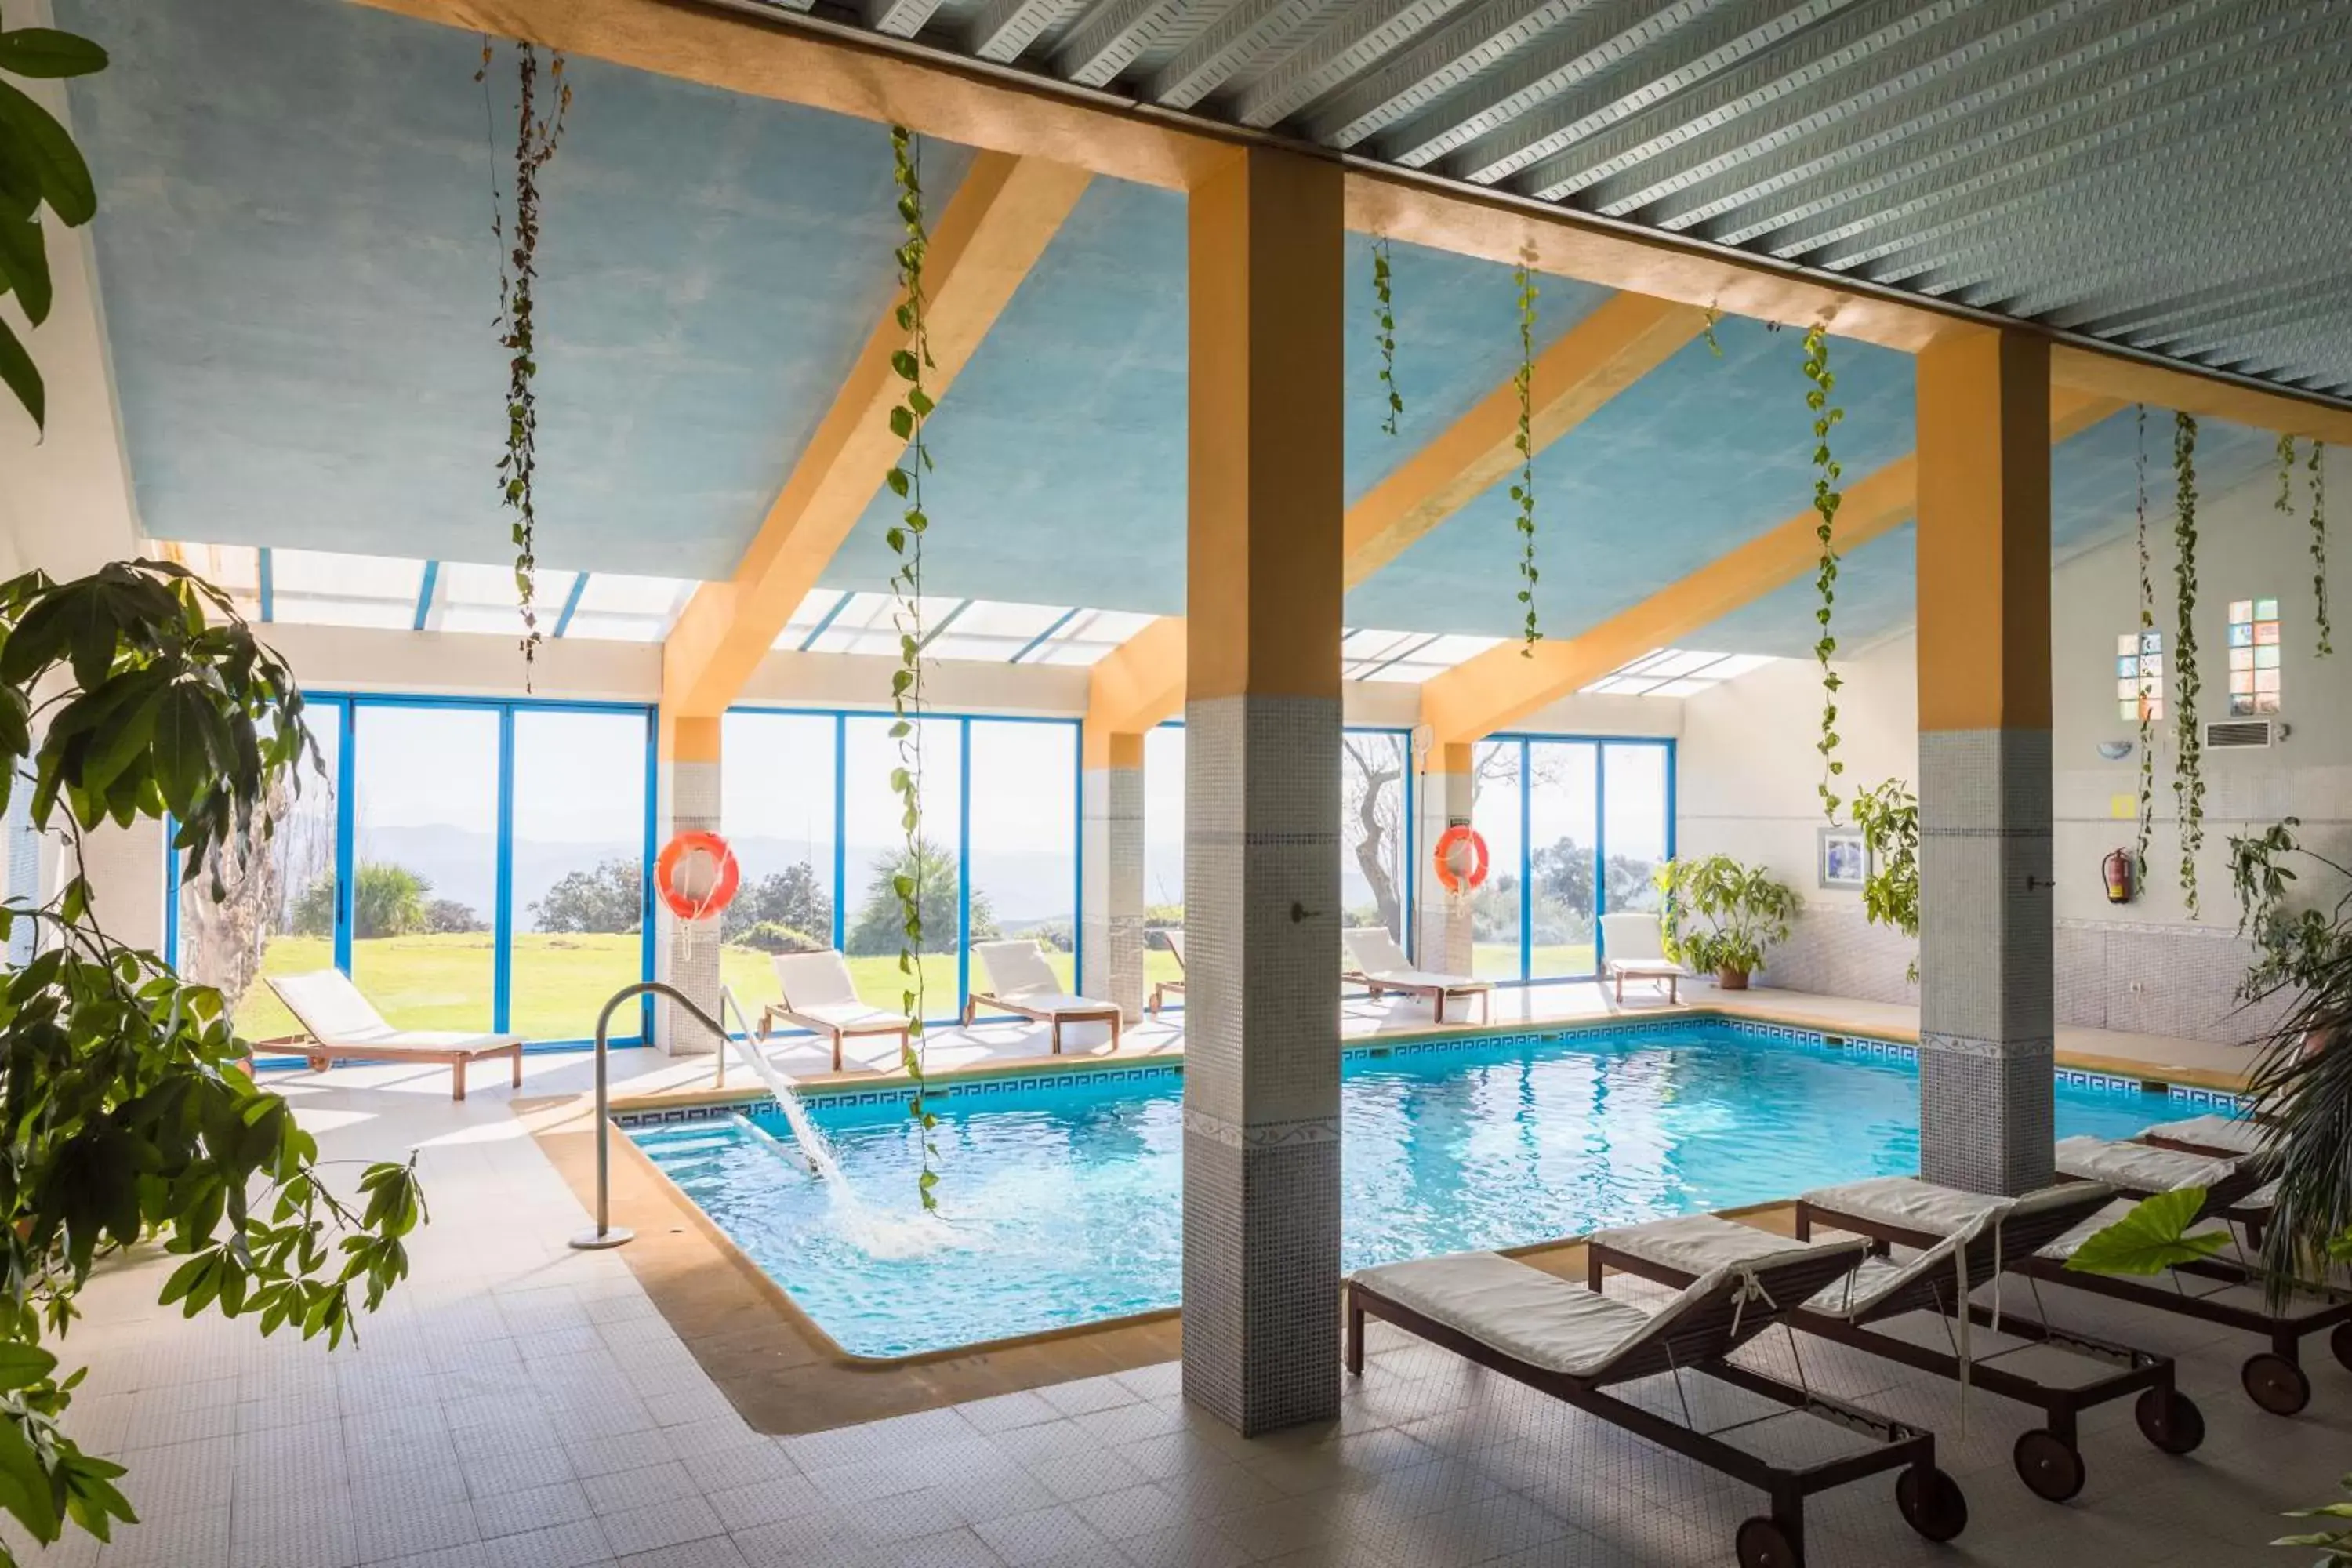 Spa and wellness centre/facilities, Swimming Pool in La Fuente del Sol Hotel & Spa